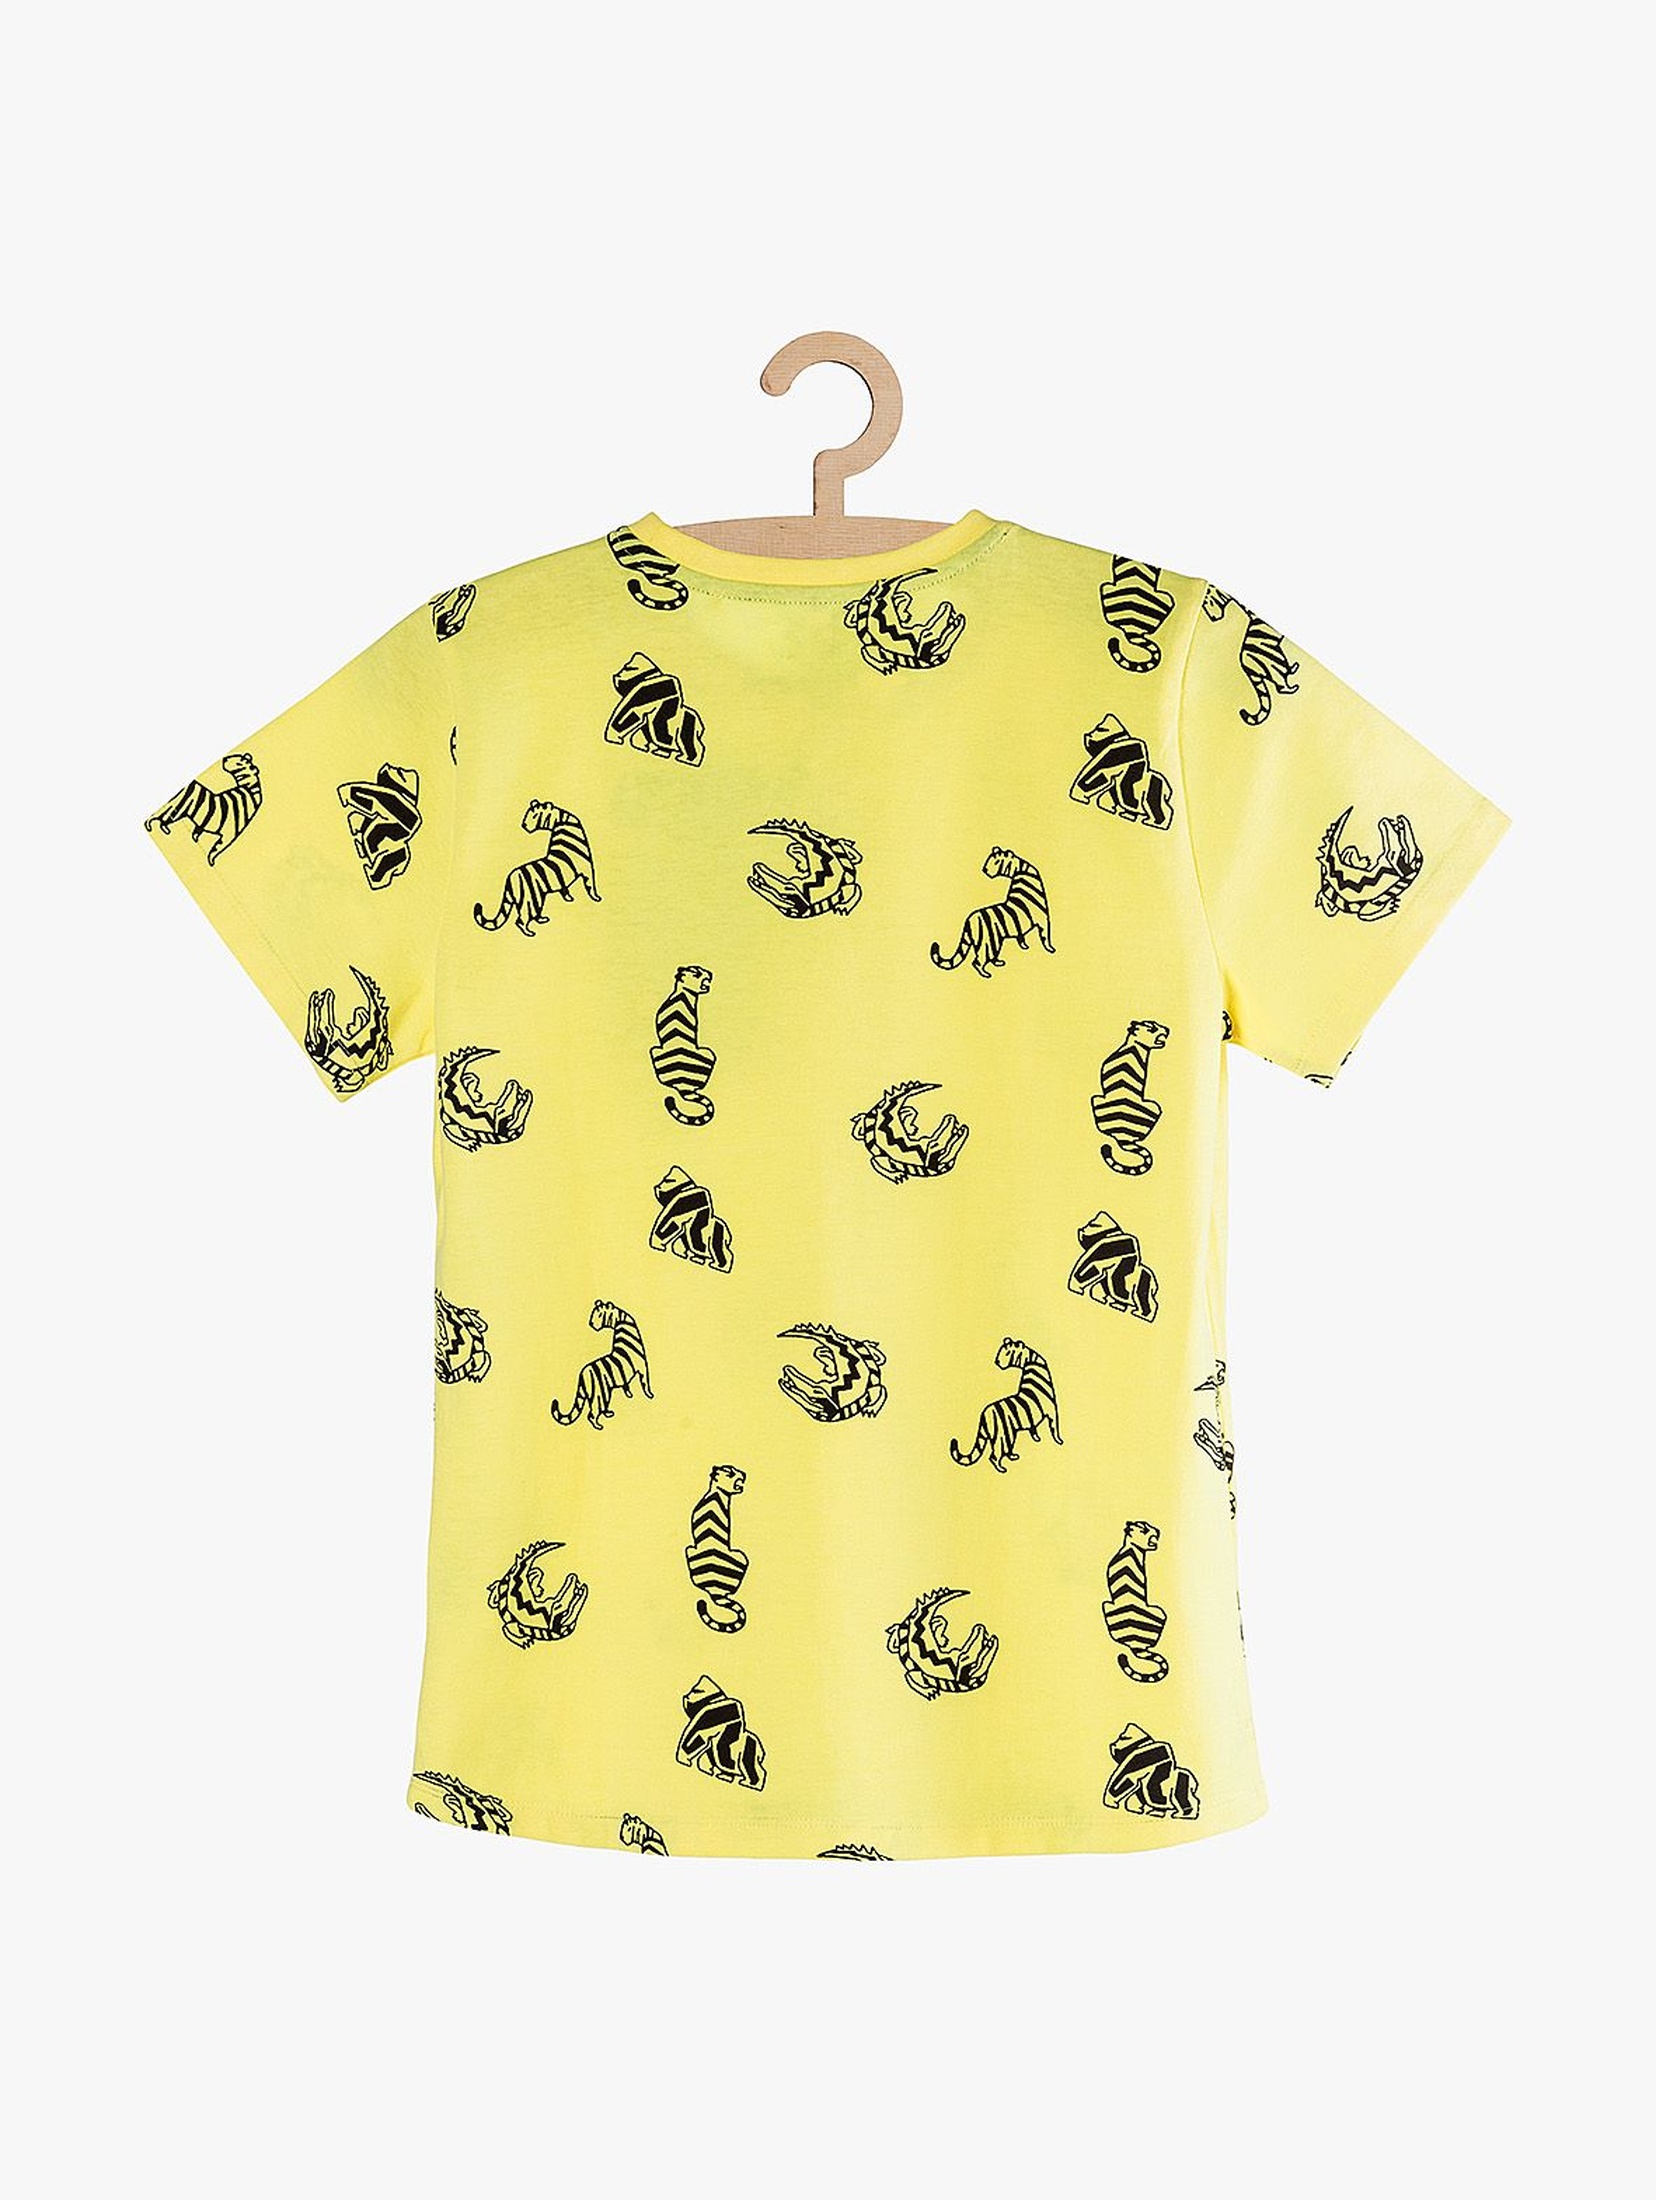 T-Shirt chłopięcy żółty dzianinowy